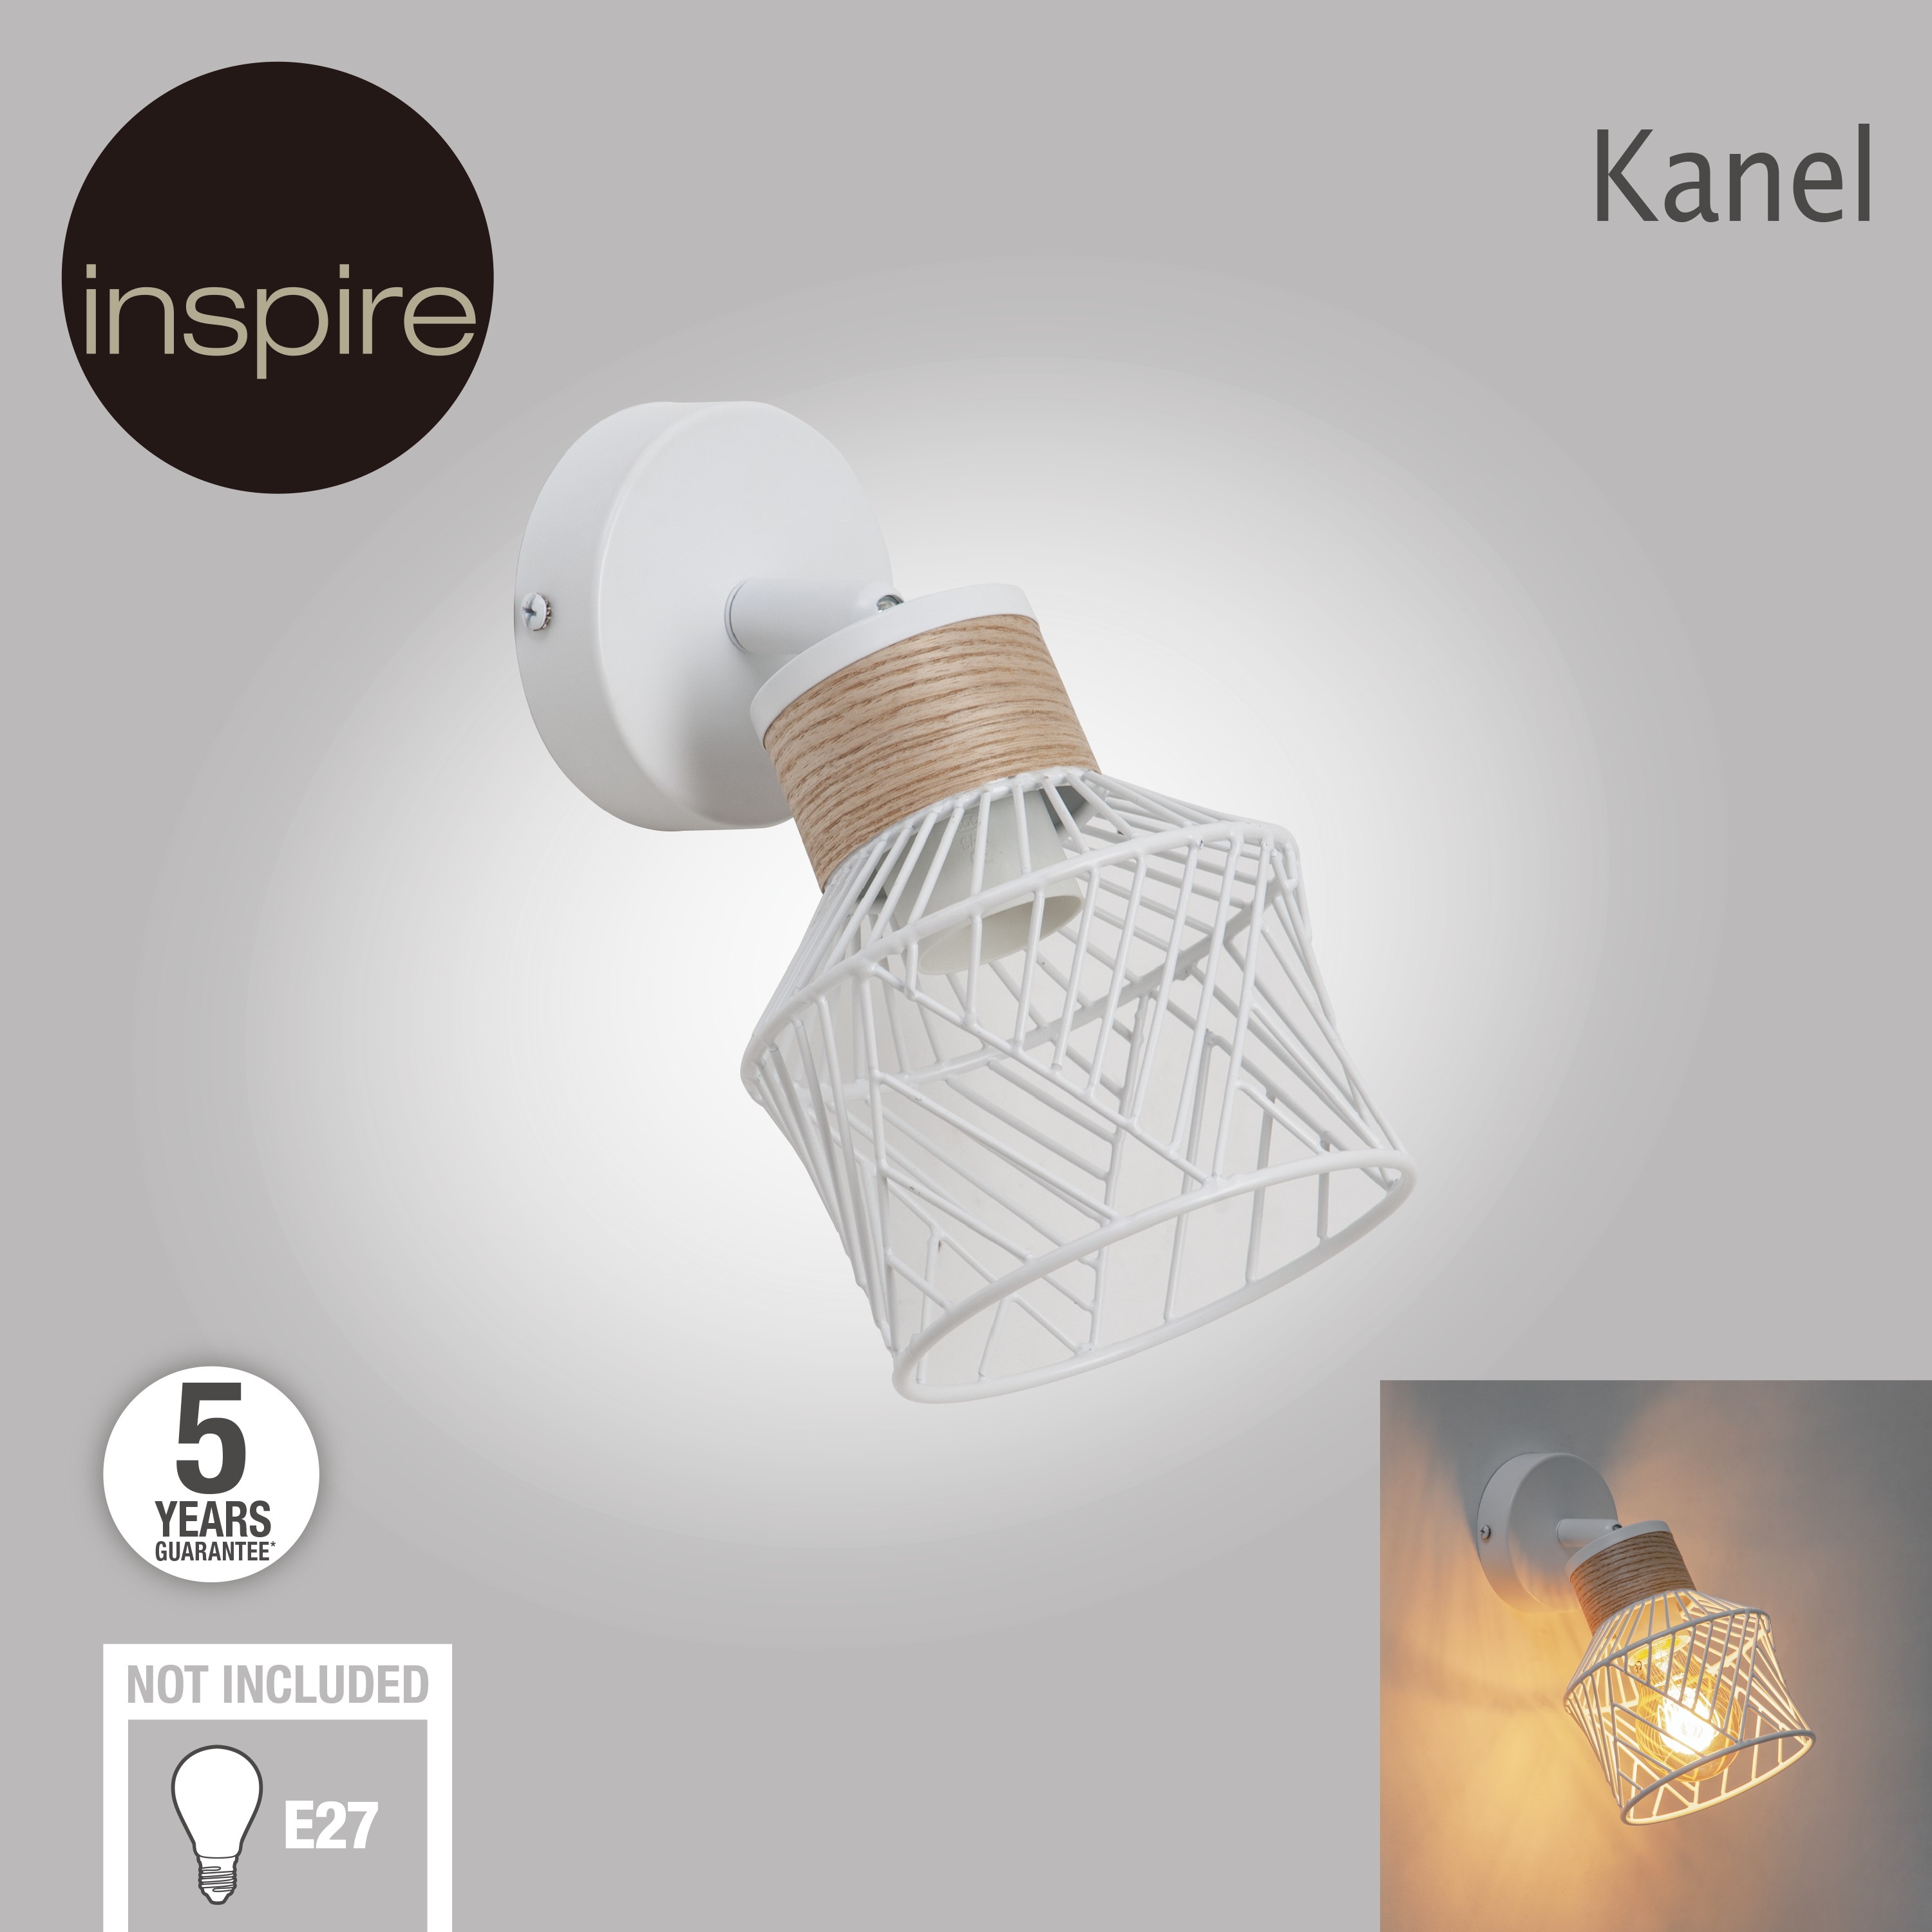 Faretto Kanel bianco in metallo E27 INSPIRE - 22